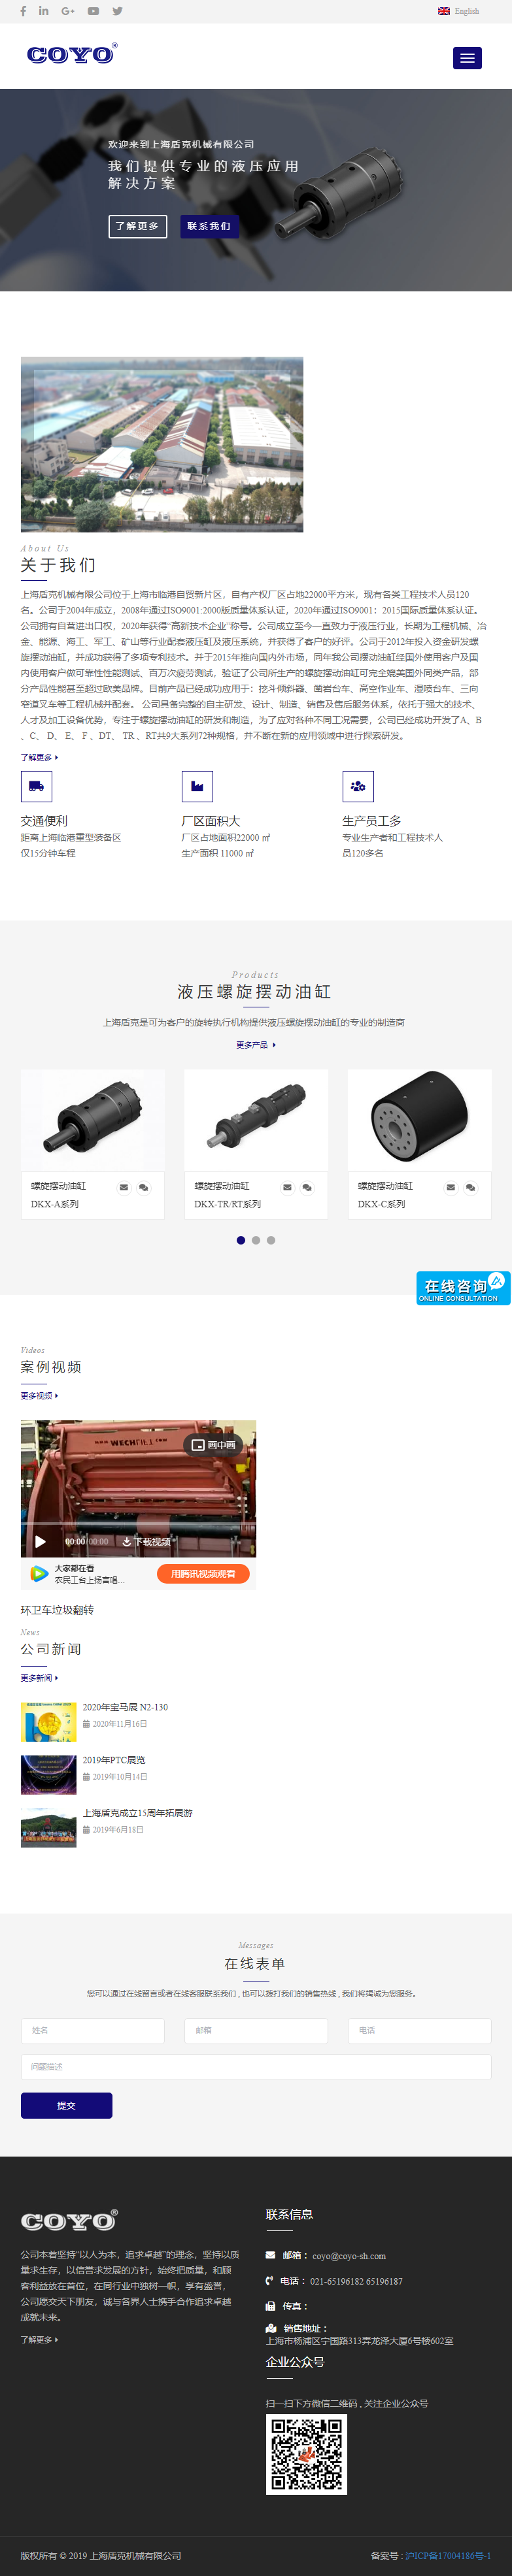 上海盾克机械有限公司网站案例